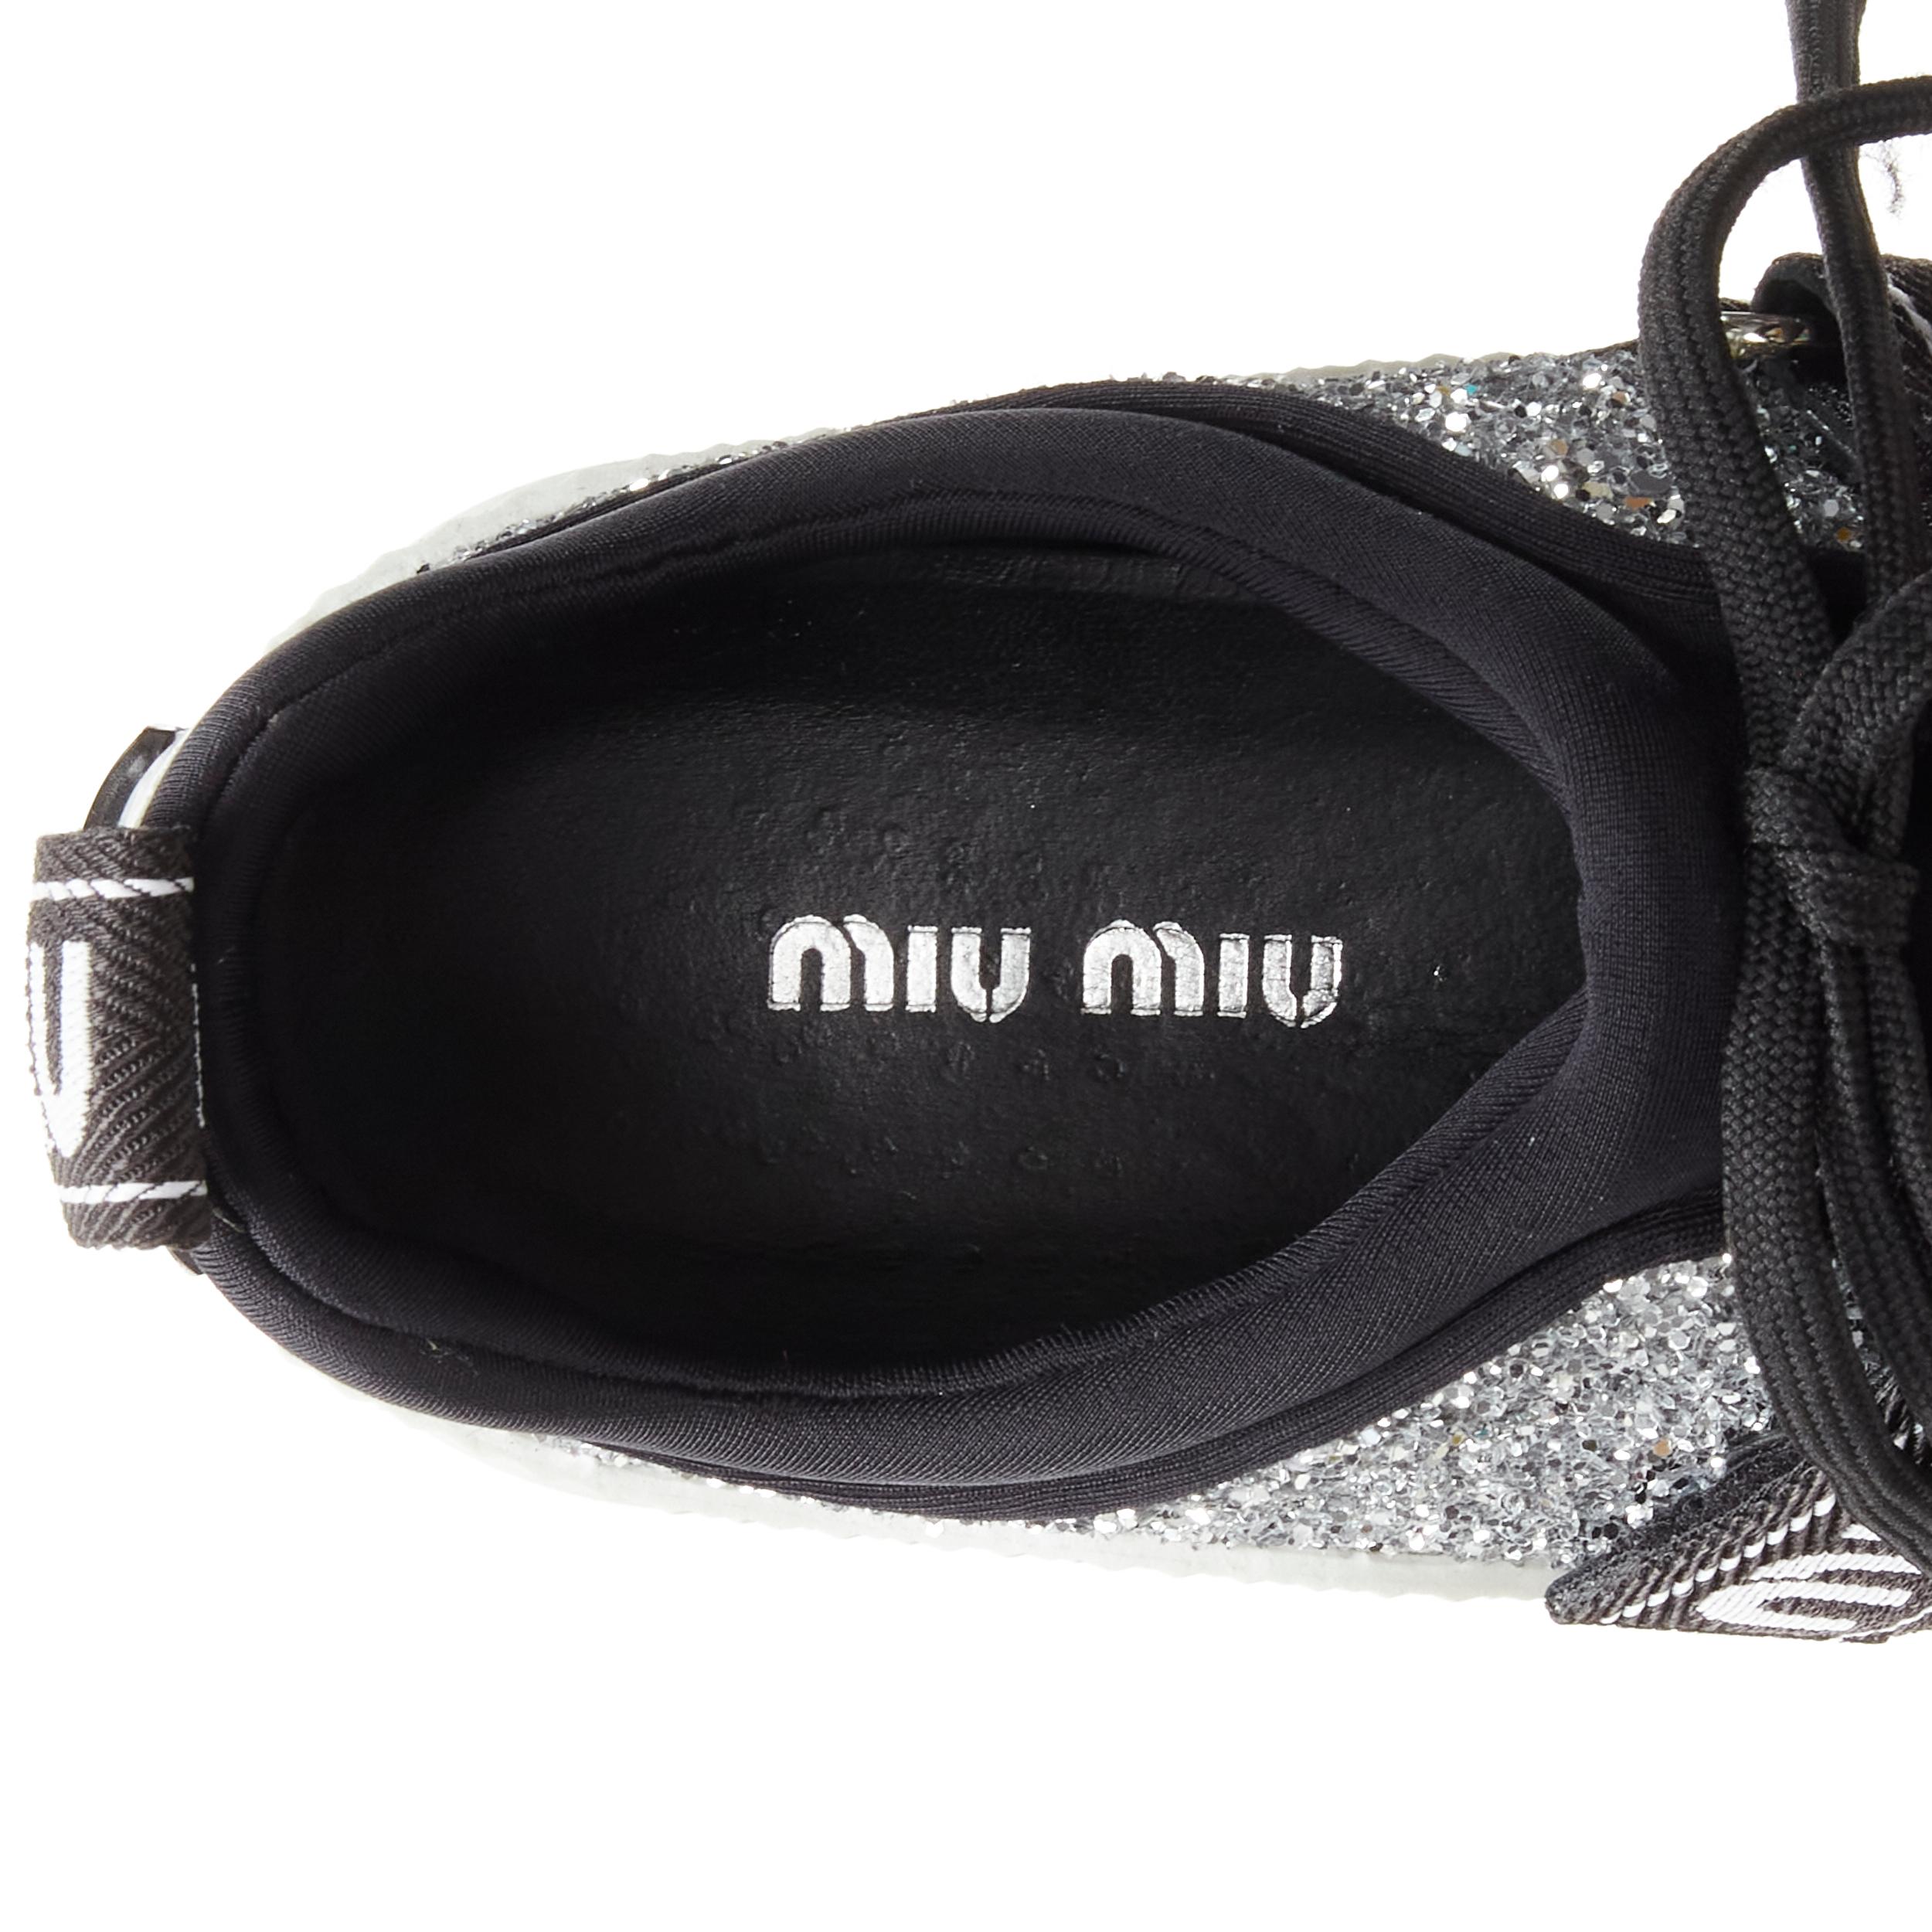 MIU MIU silver glitter logo strap low top runner sneaker EU36 For Sale 1